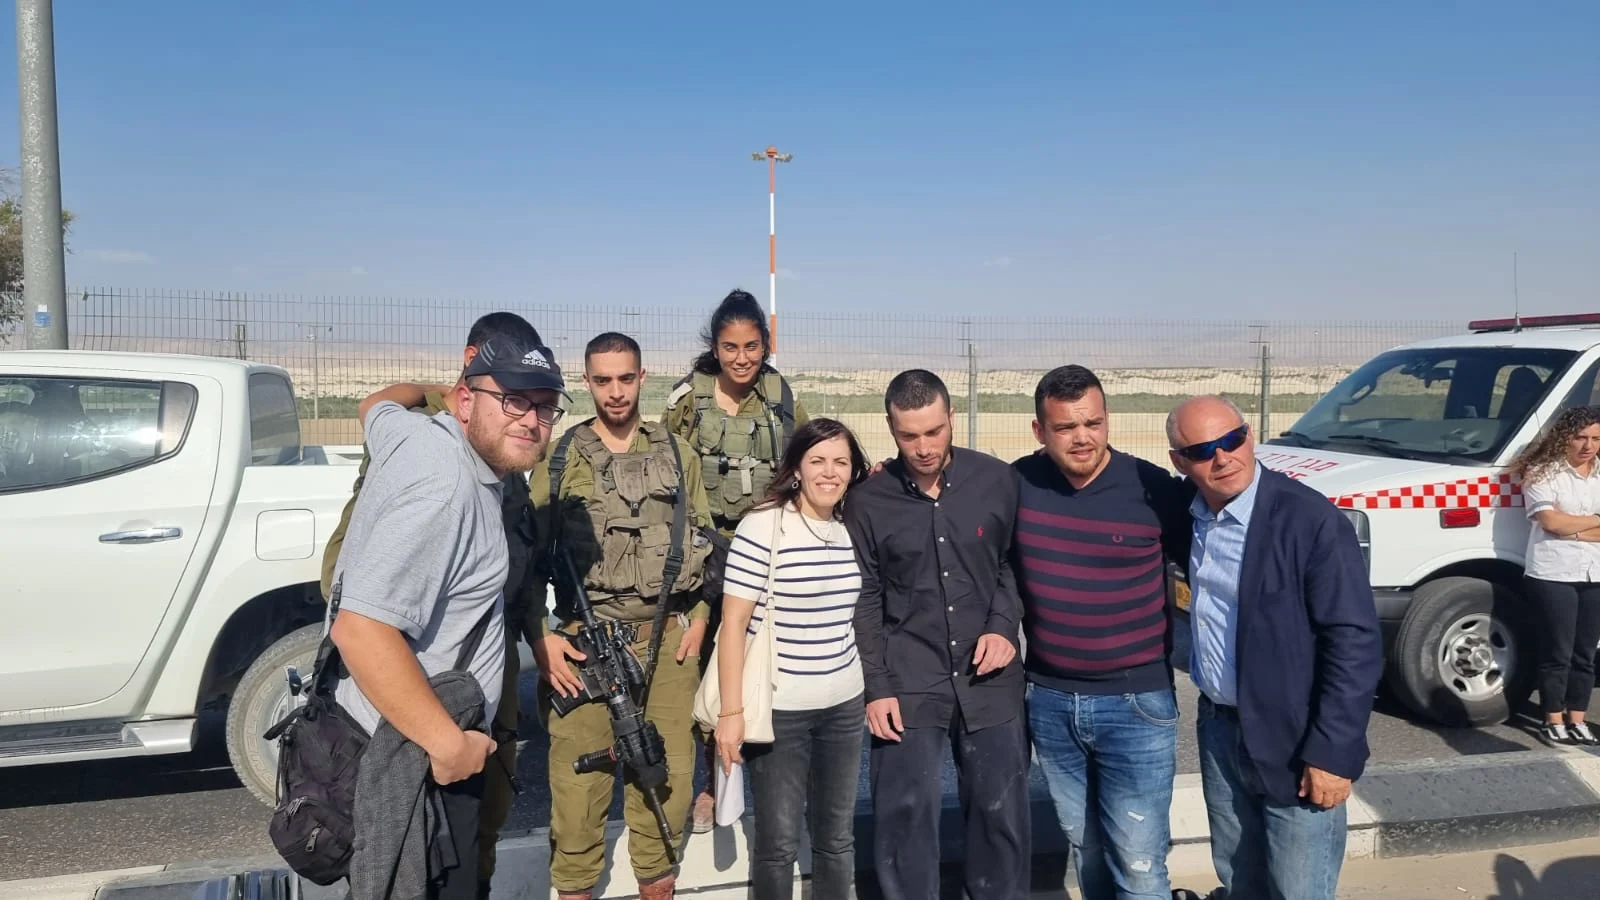 שלום רוטבן עם משפחתו לאחר מעבר הגבול מירדן לישראל